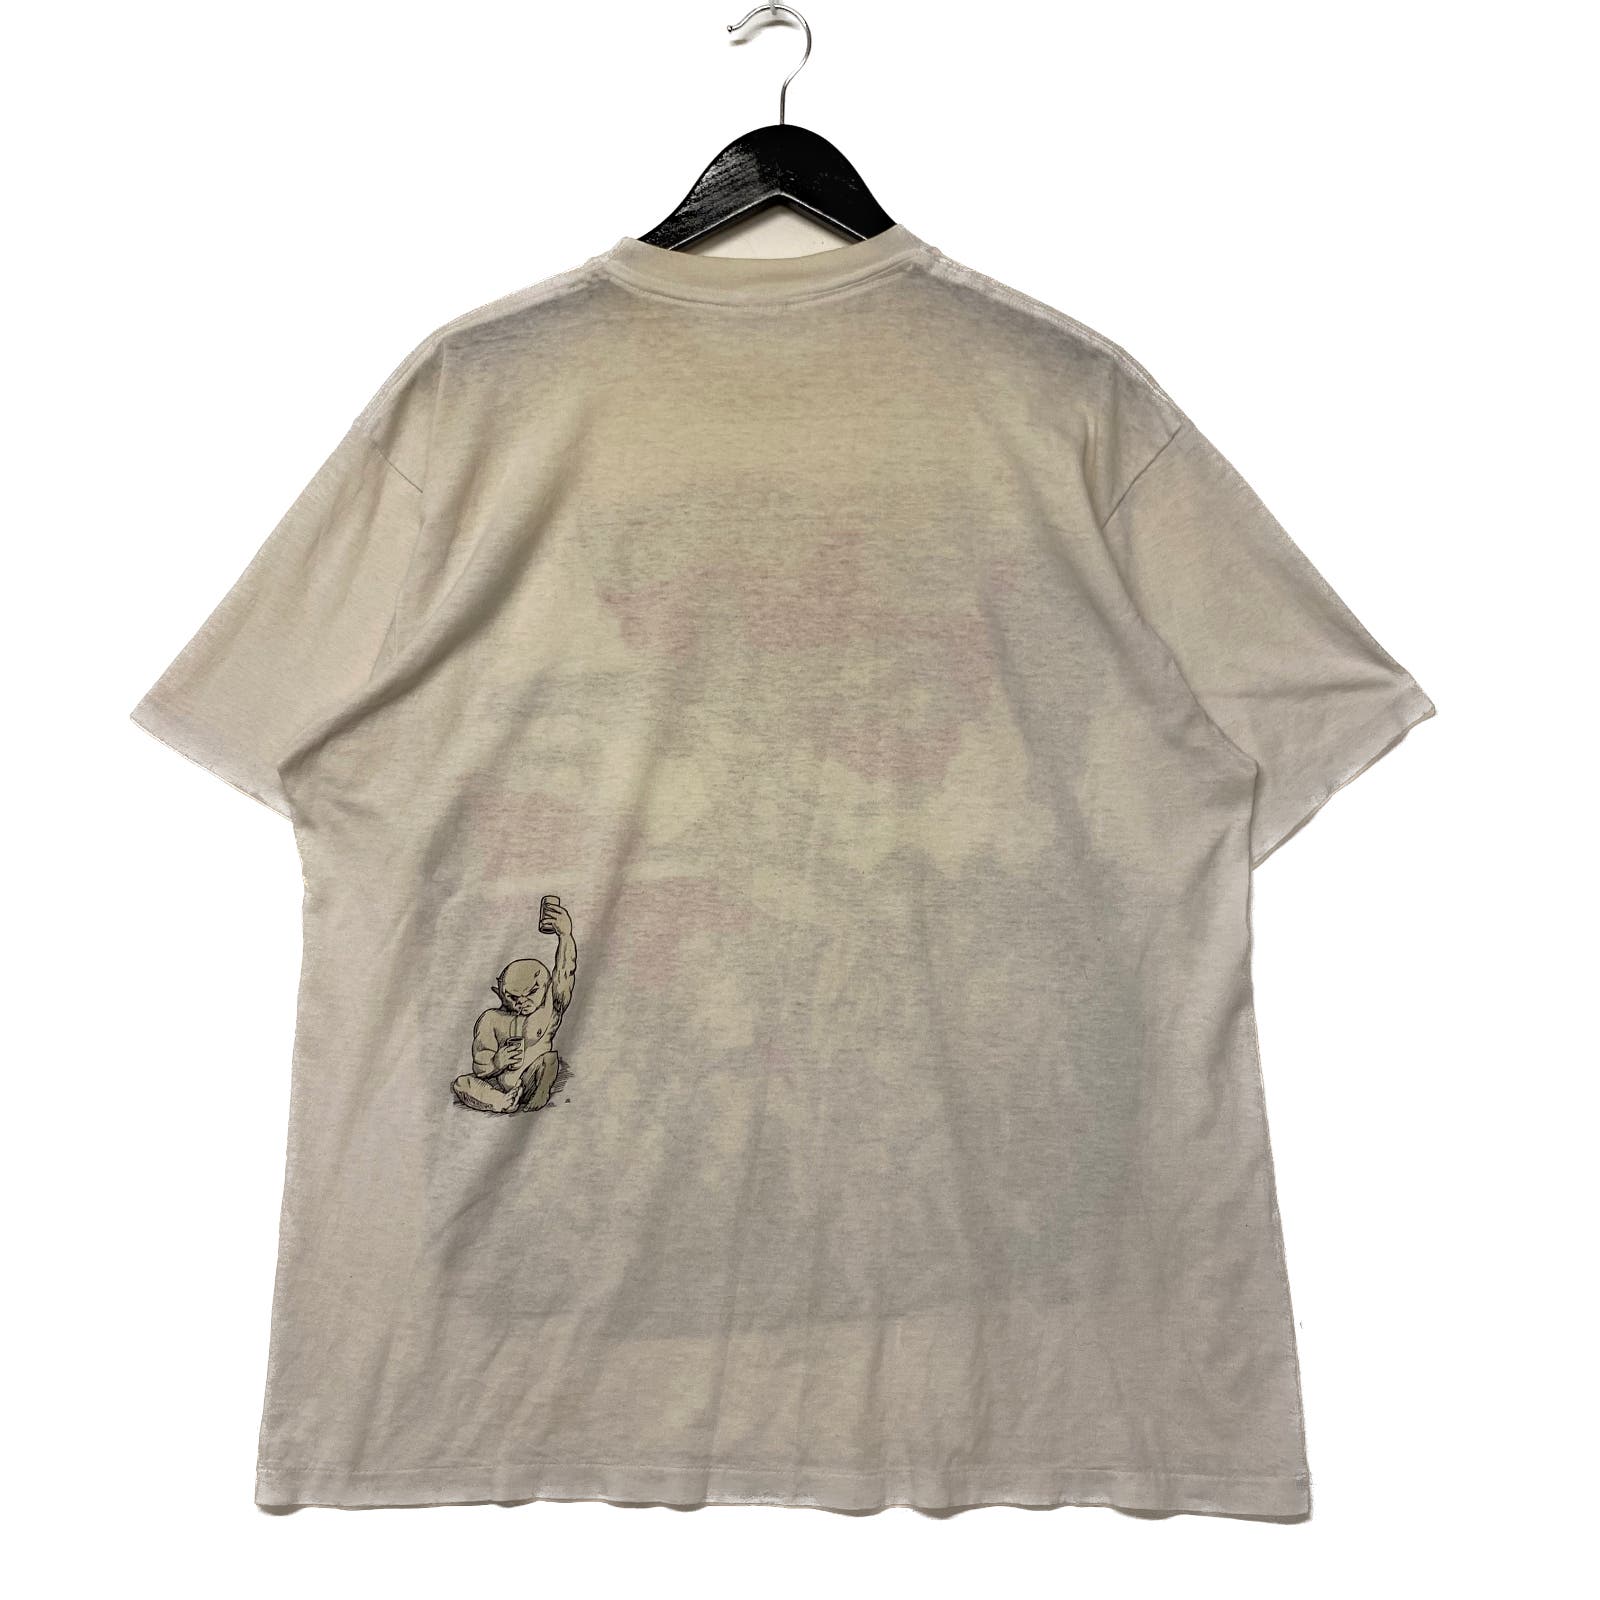 1991 Ozzy Osbourne Backstage Pass T-shirt Size L